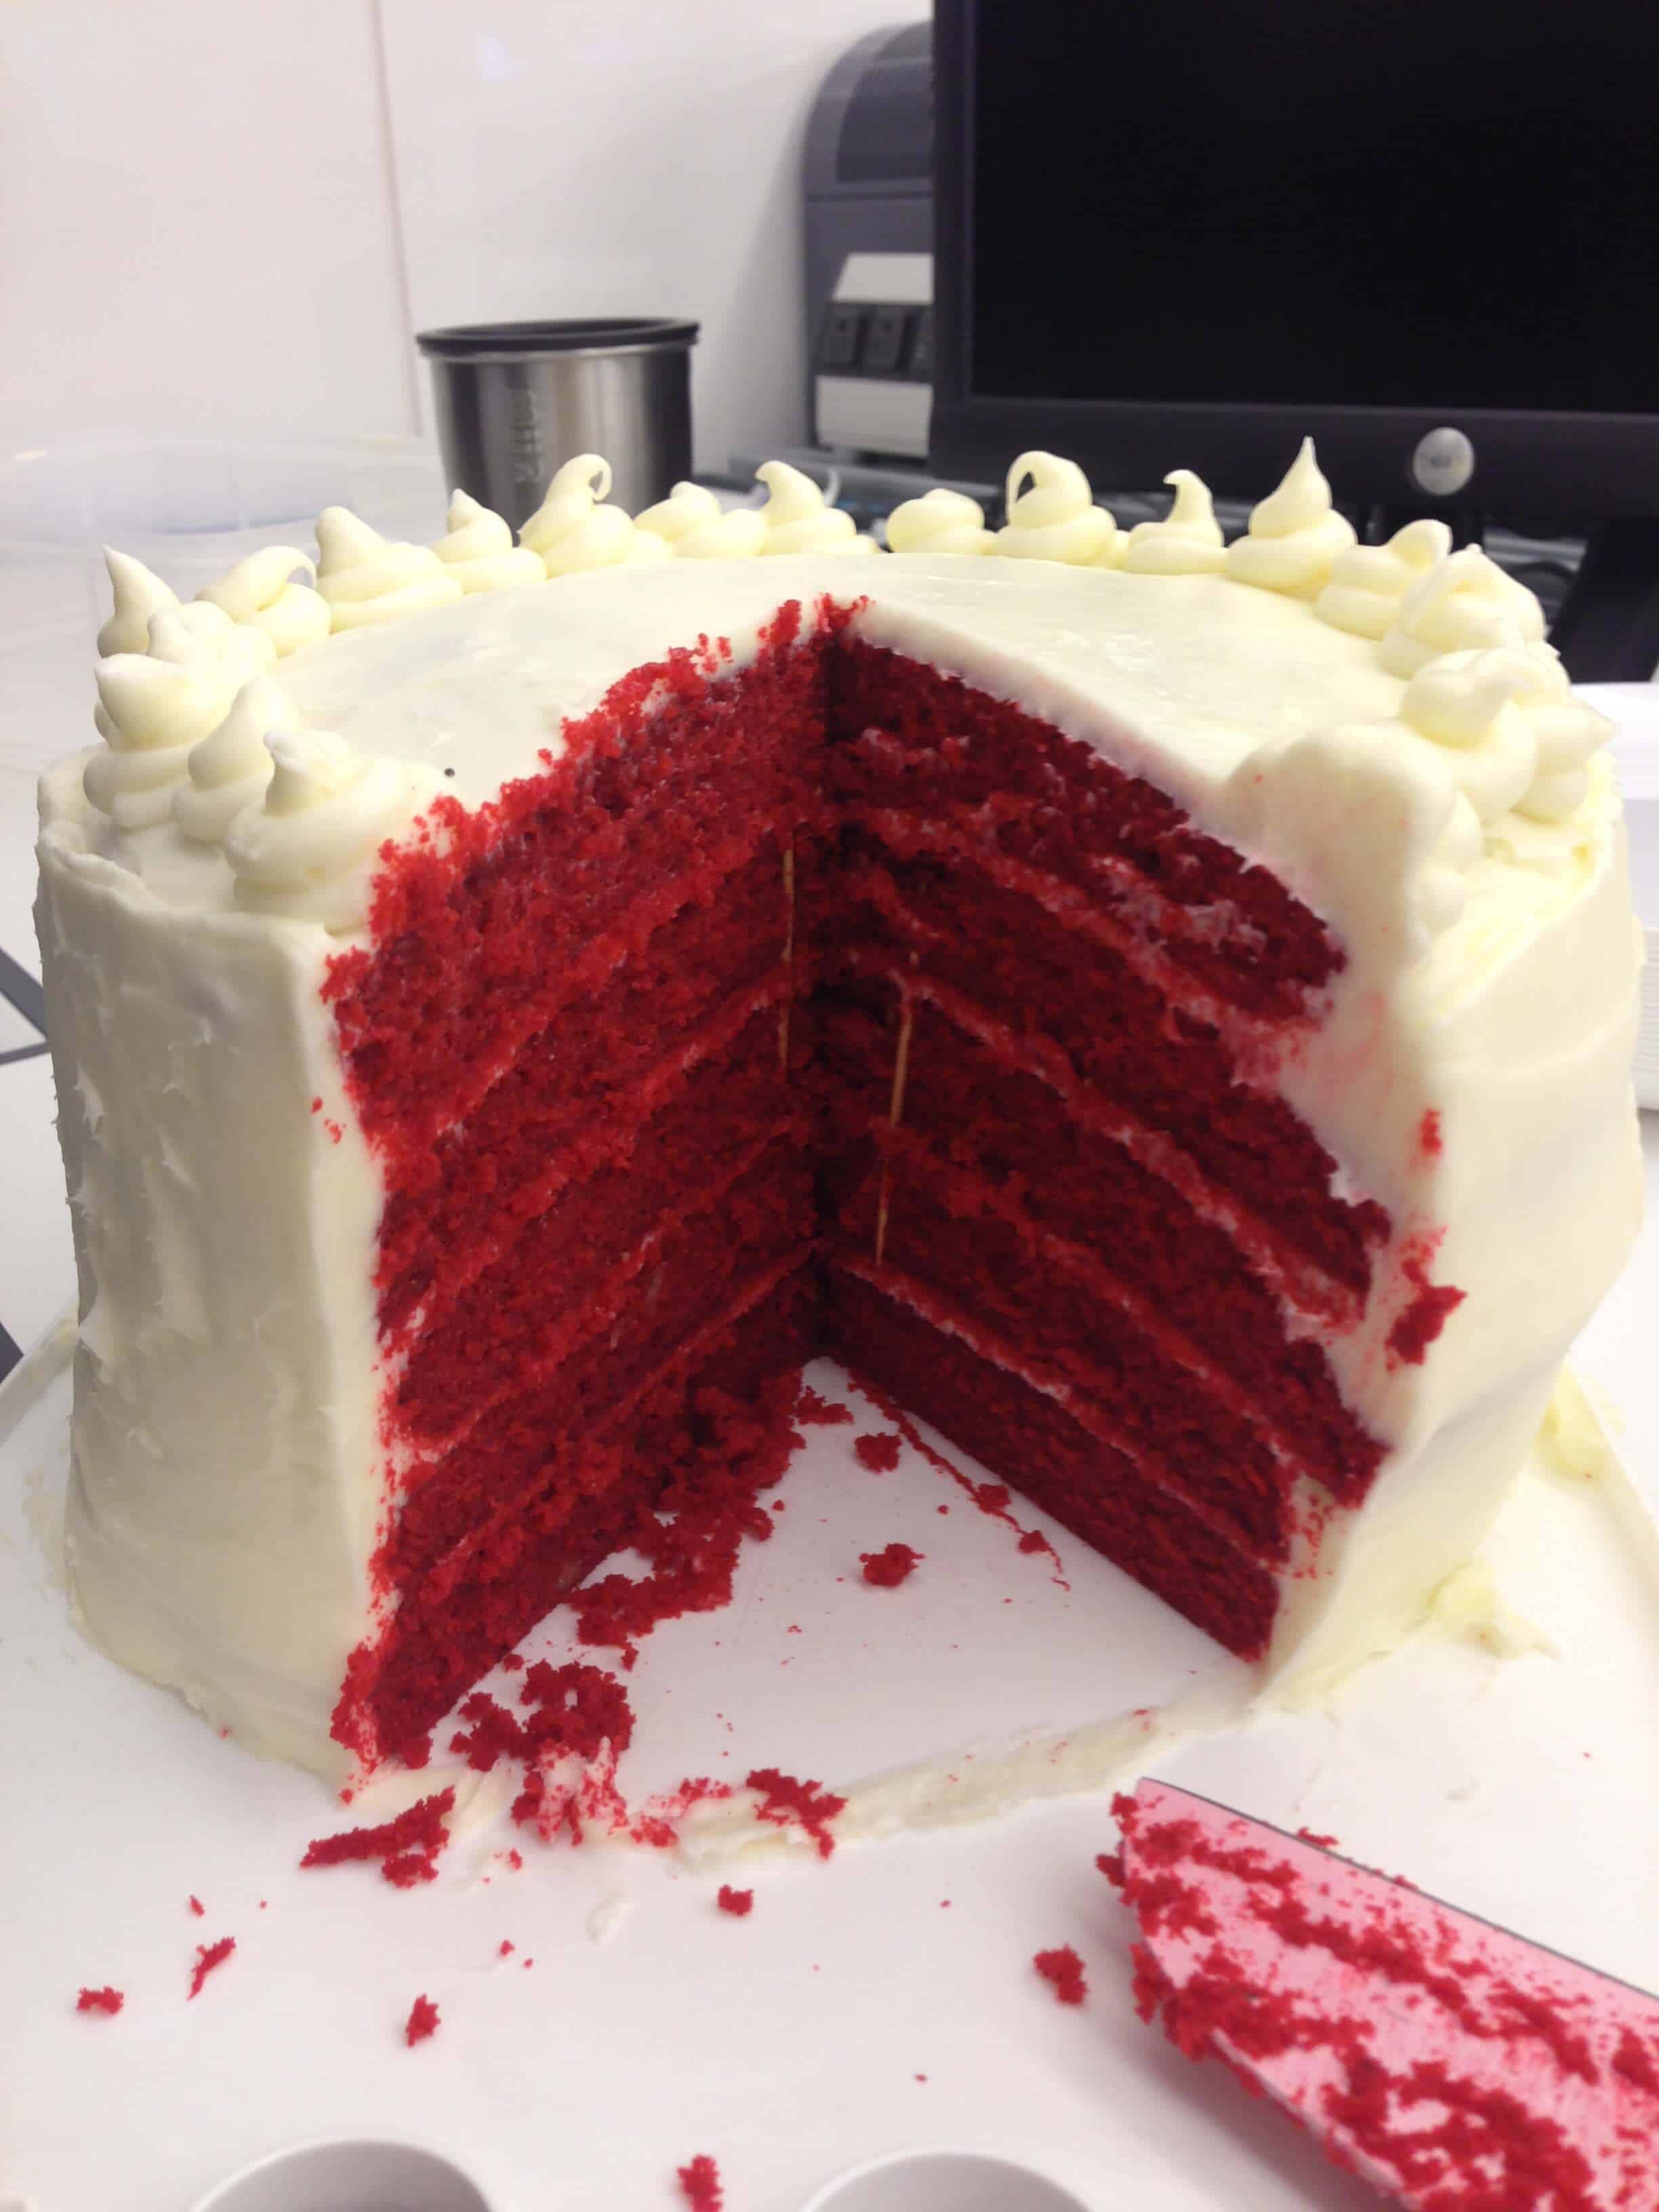 Red Velvet Cake Recipe Homemade | Easy Red Velvet Cake DIY